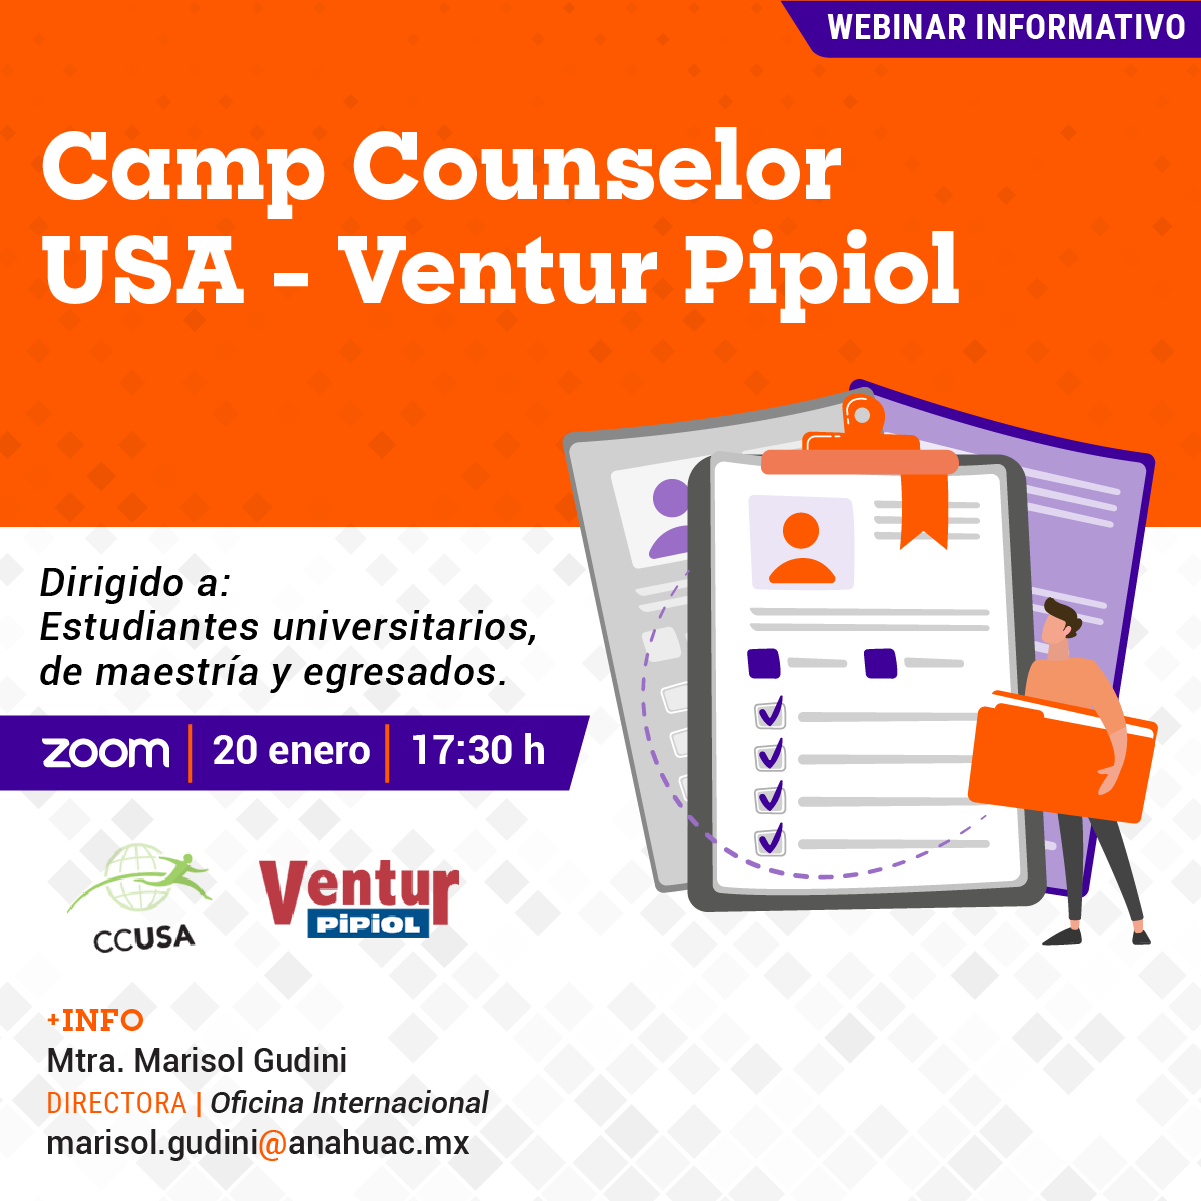 Camp Counselor USA - Ventur Pipiol